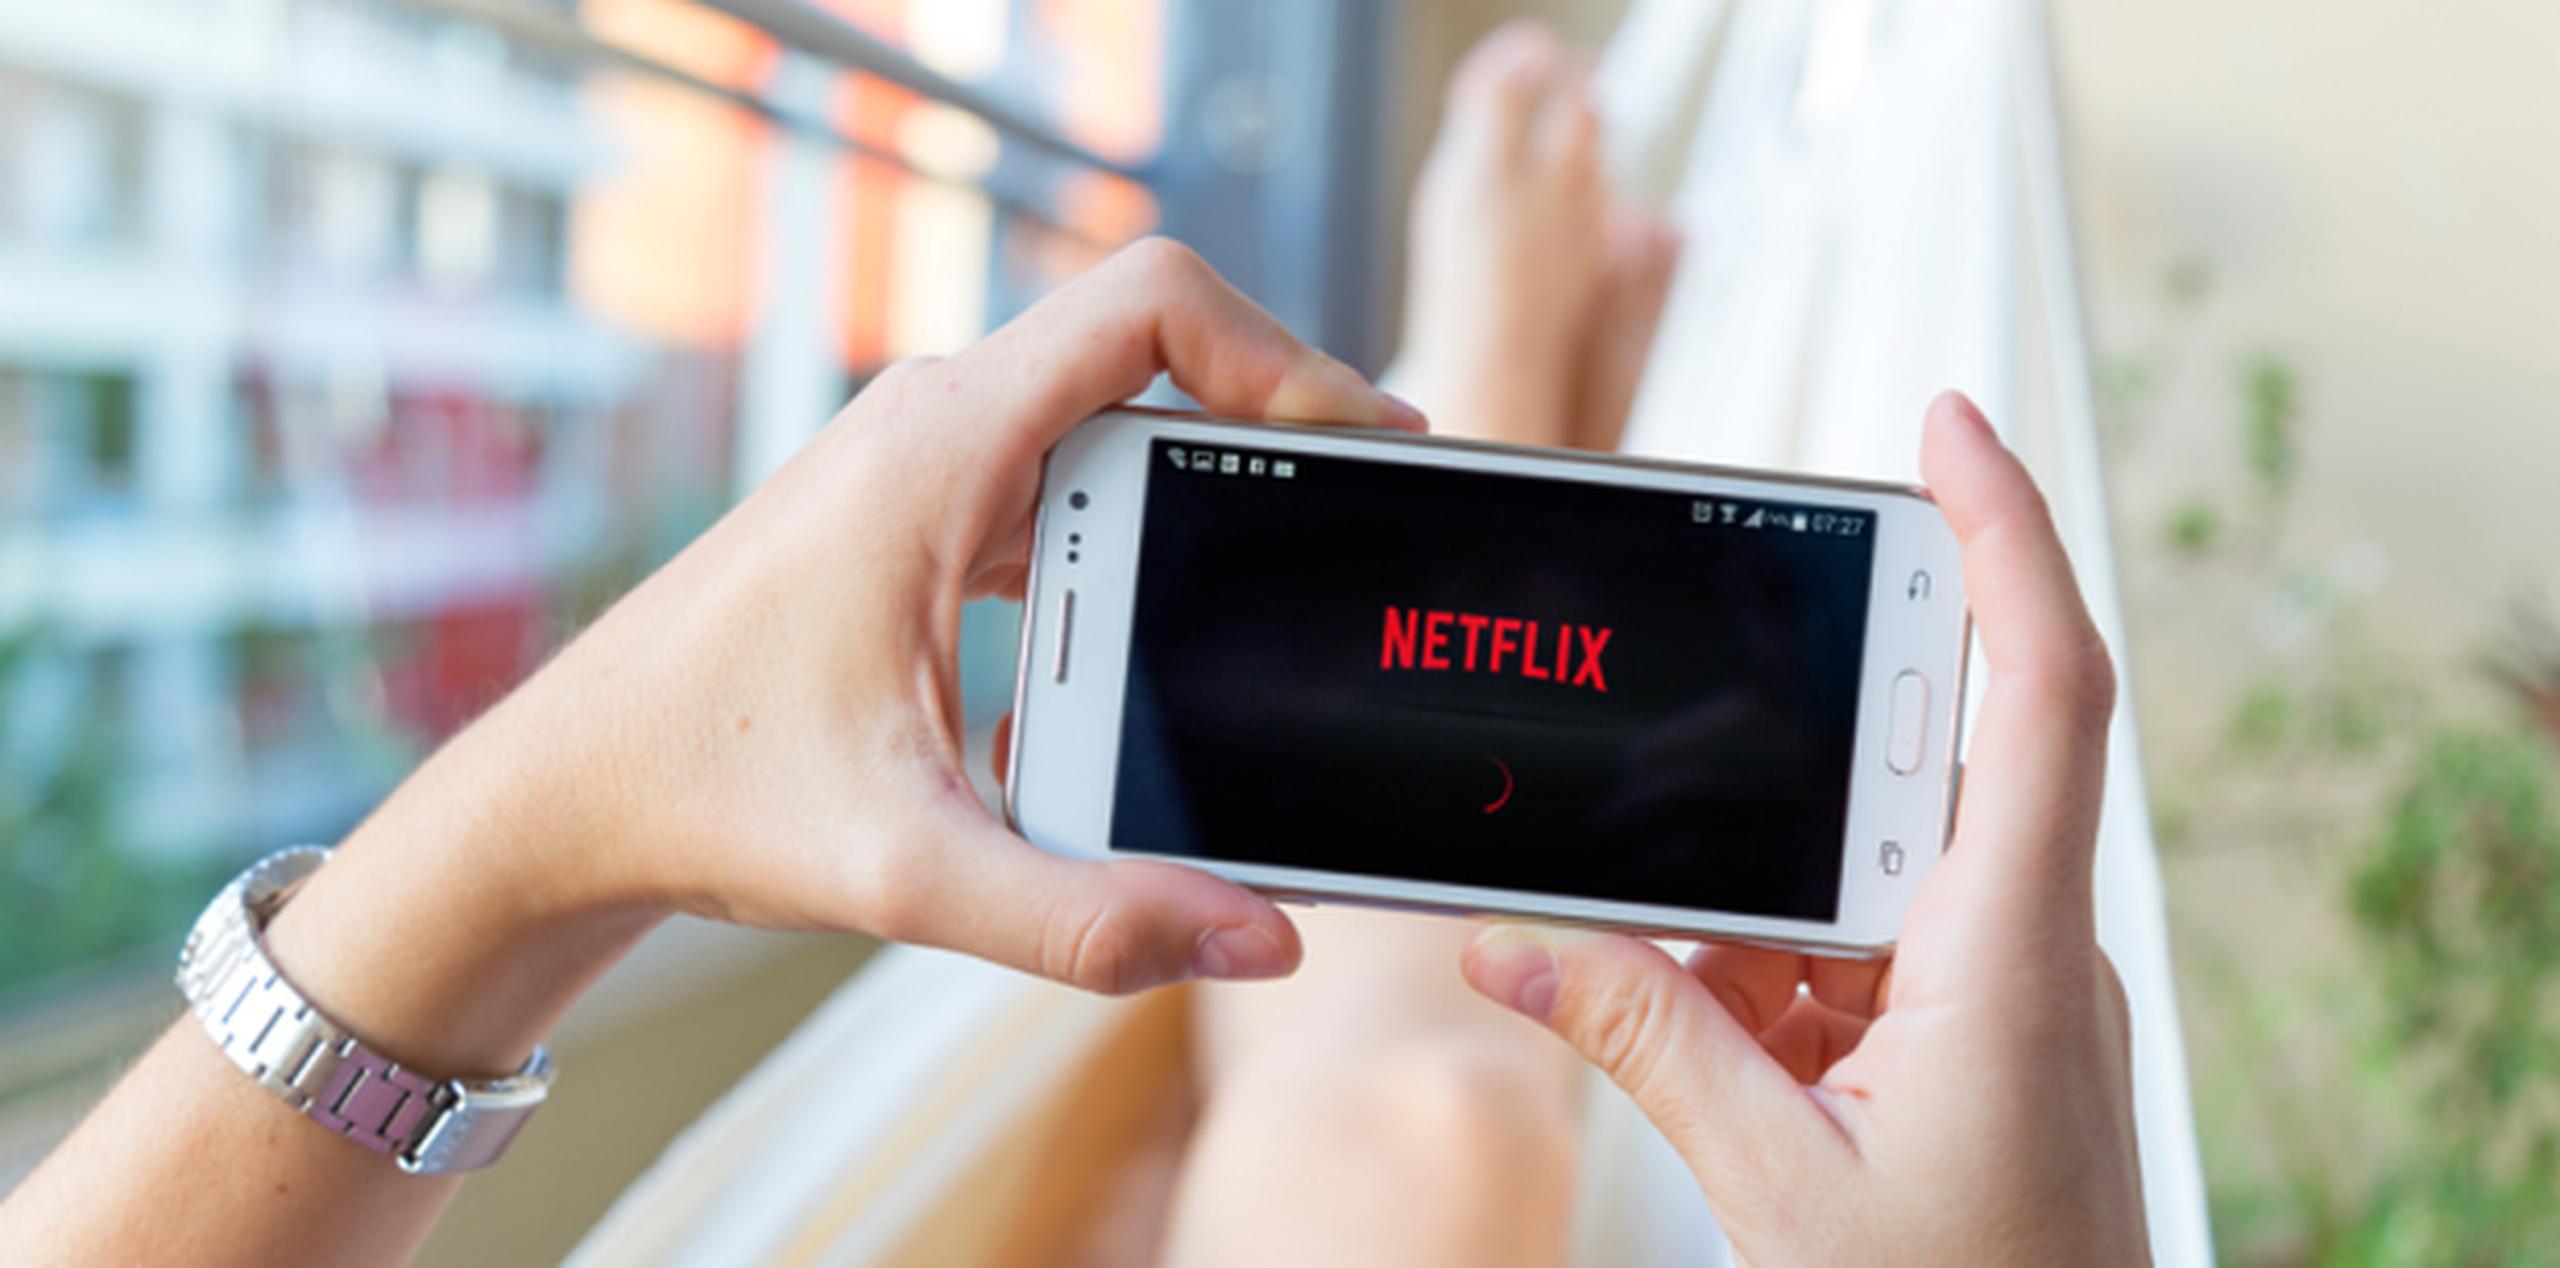 Aplicación de Netflix. (Shutterstock)